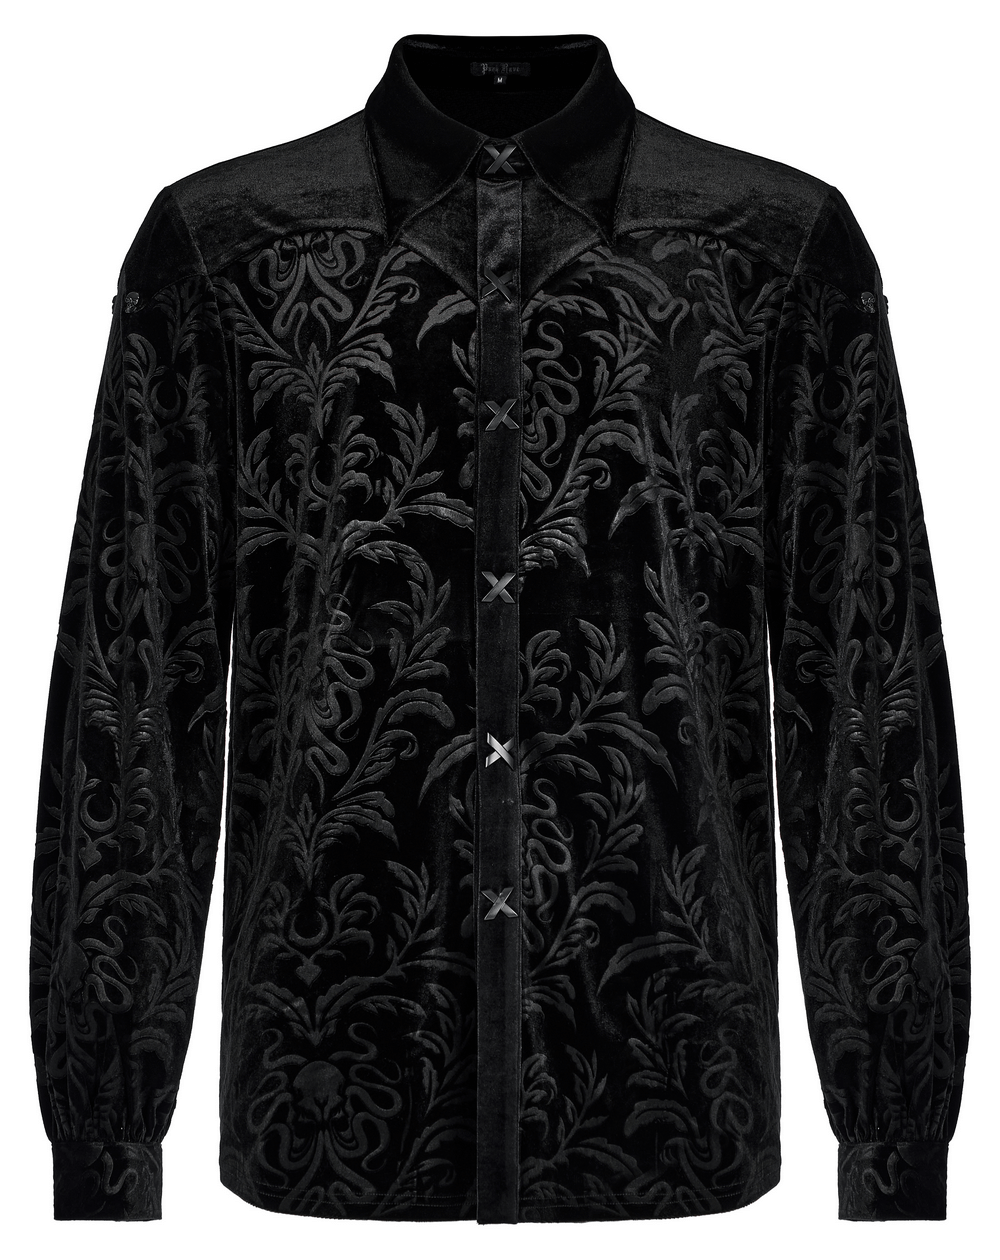 Velvet Embossed Gothic Shirt for Casual Wear - HARD'N'HEAVY